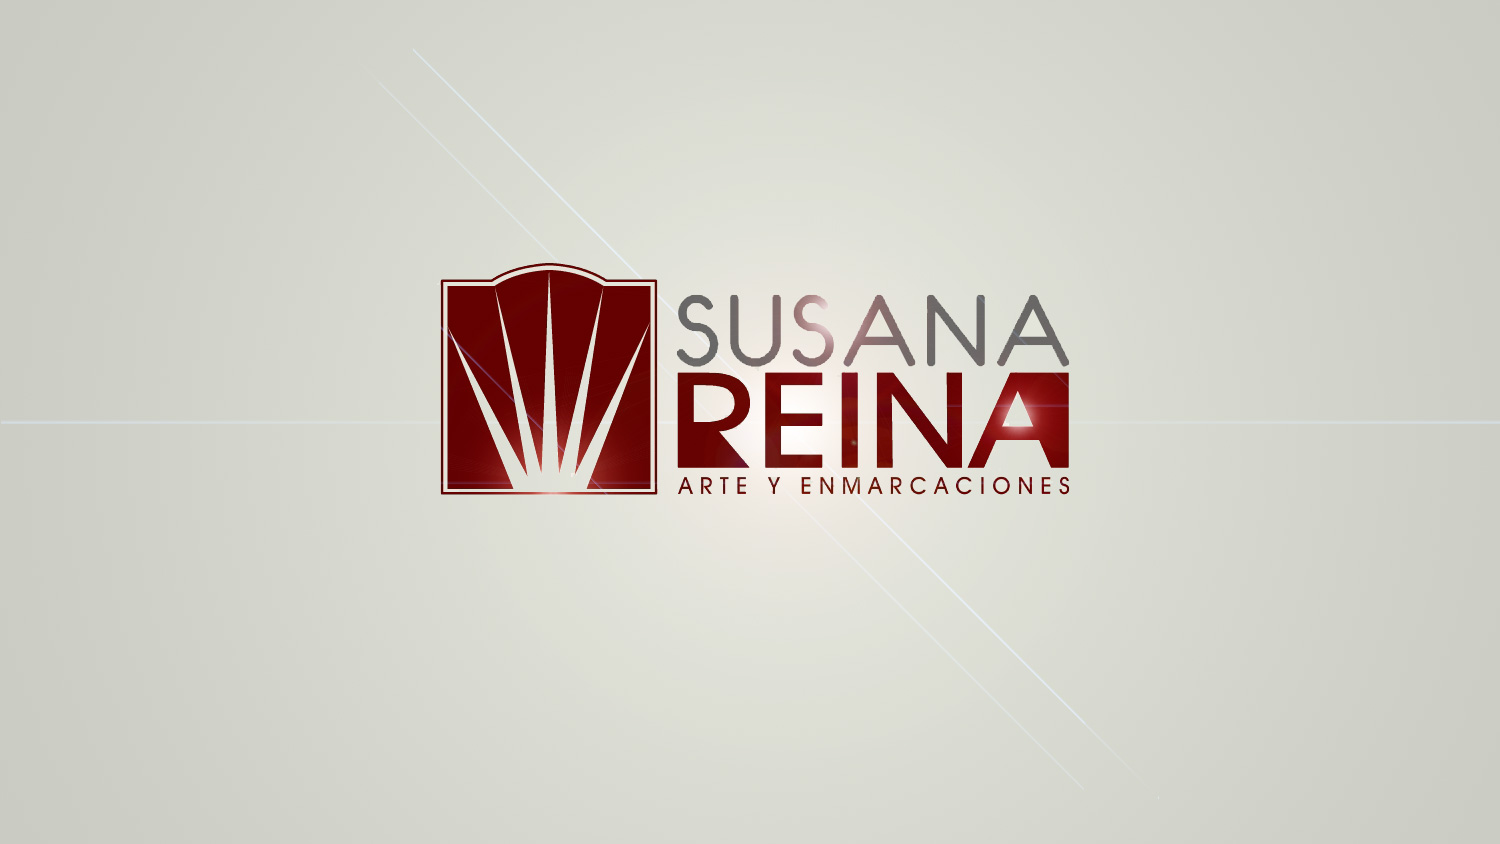 Susana Reina